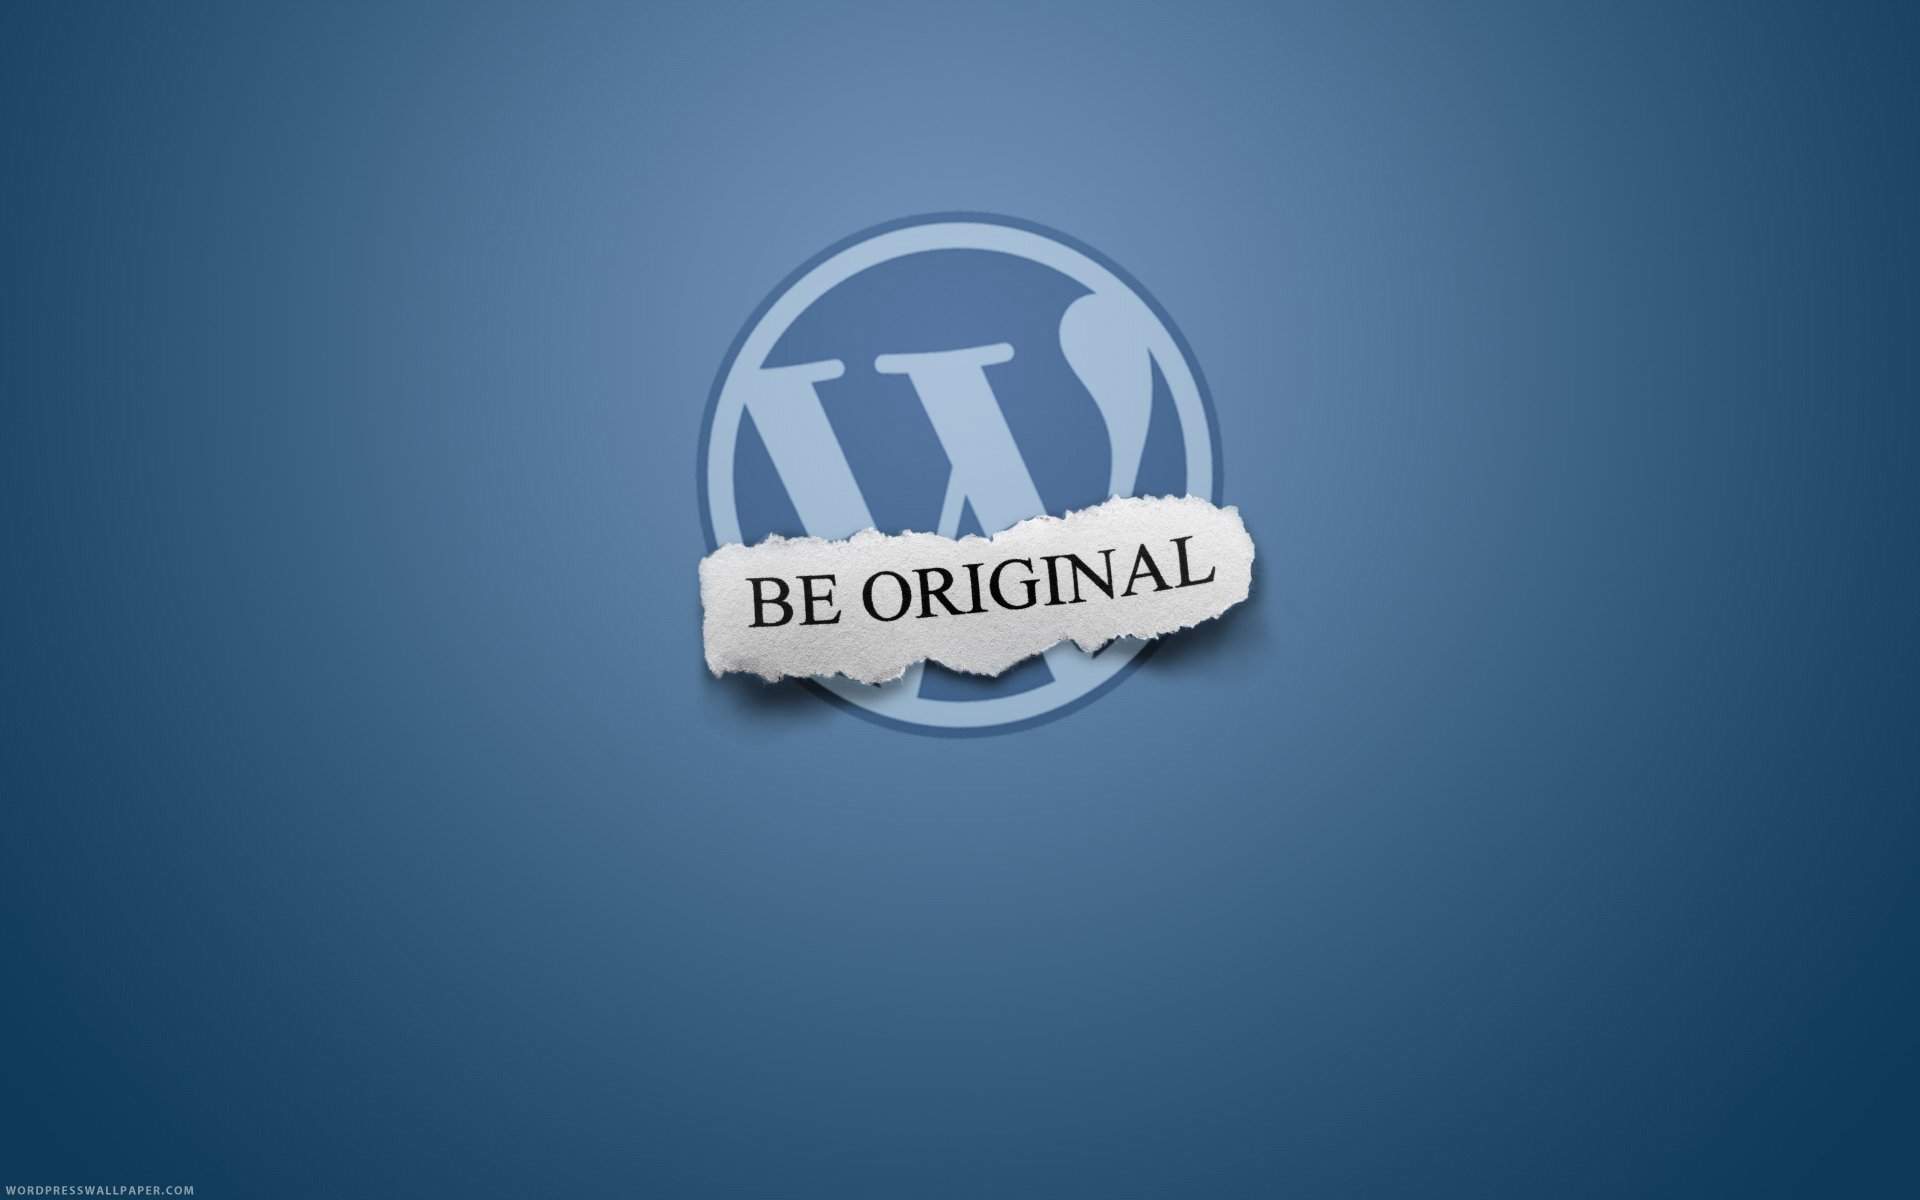 Фоны wordpress. Надпись be Original. Be Original обои. WORDPRESS Фоновое изображение. Be Original картинка.